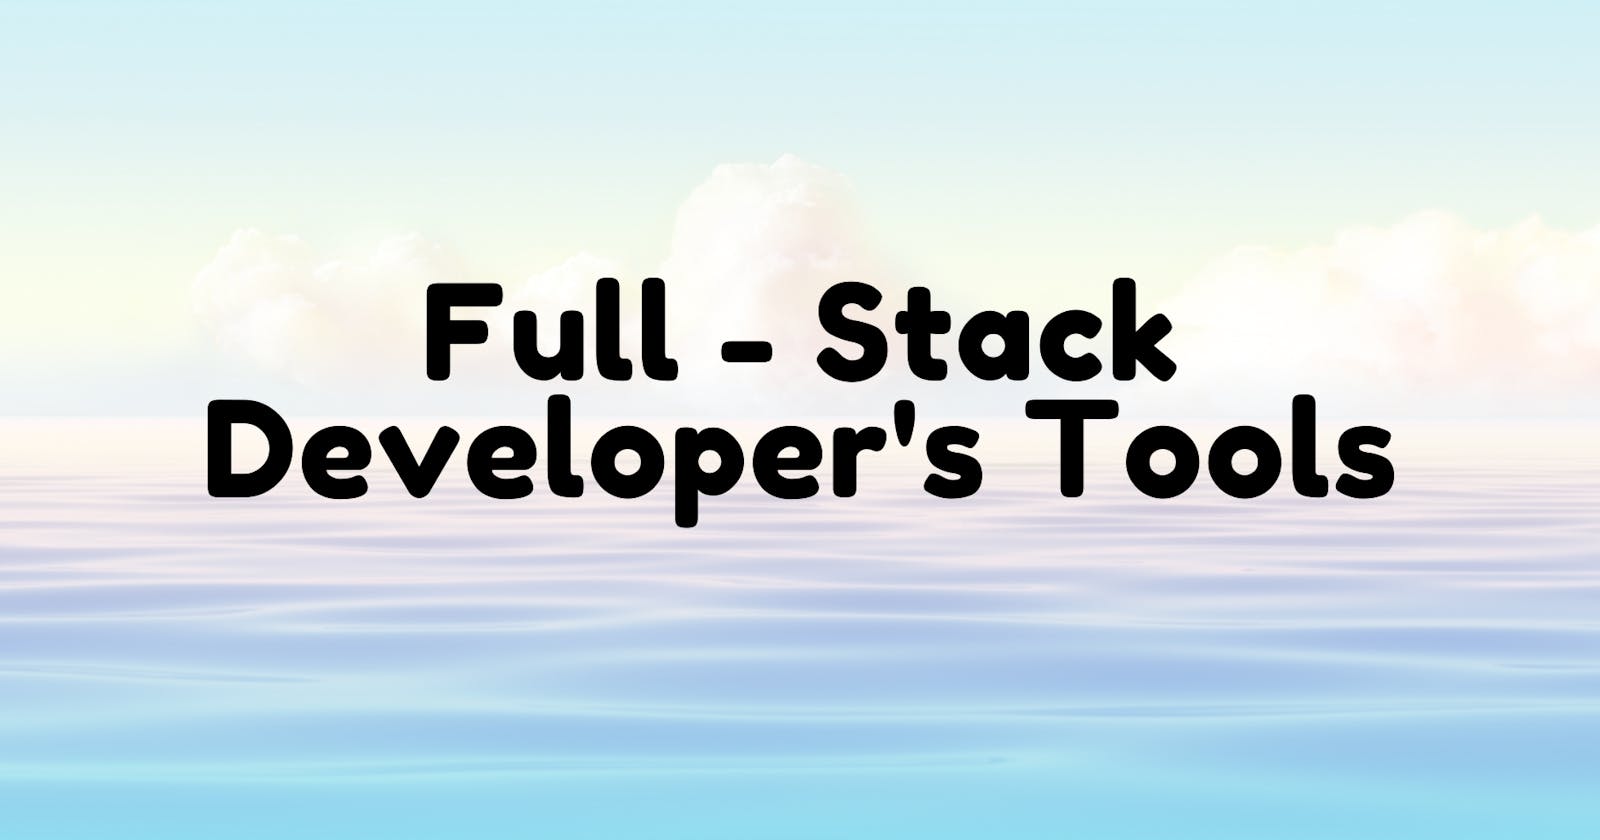 Full-Stack Developer's Tools